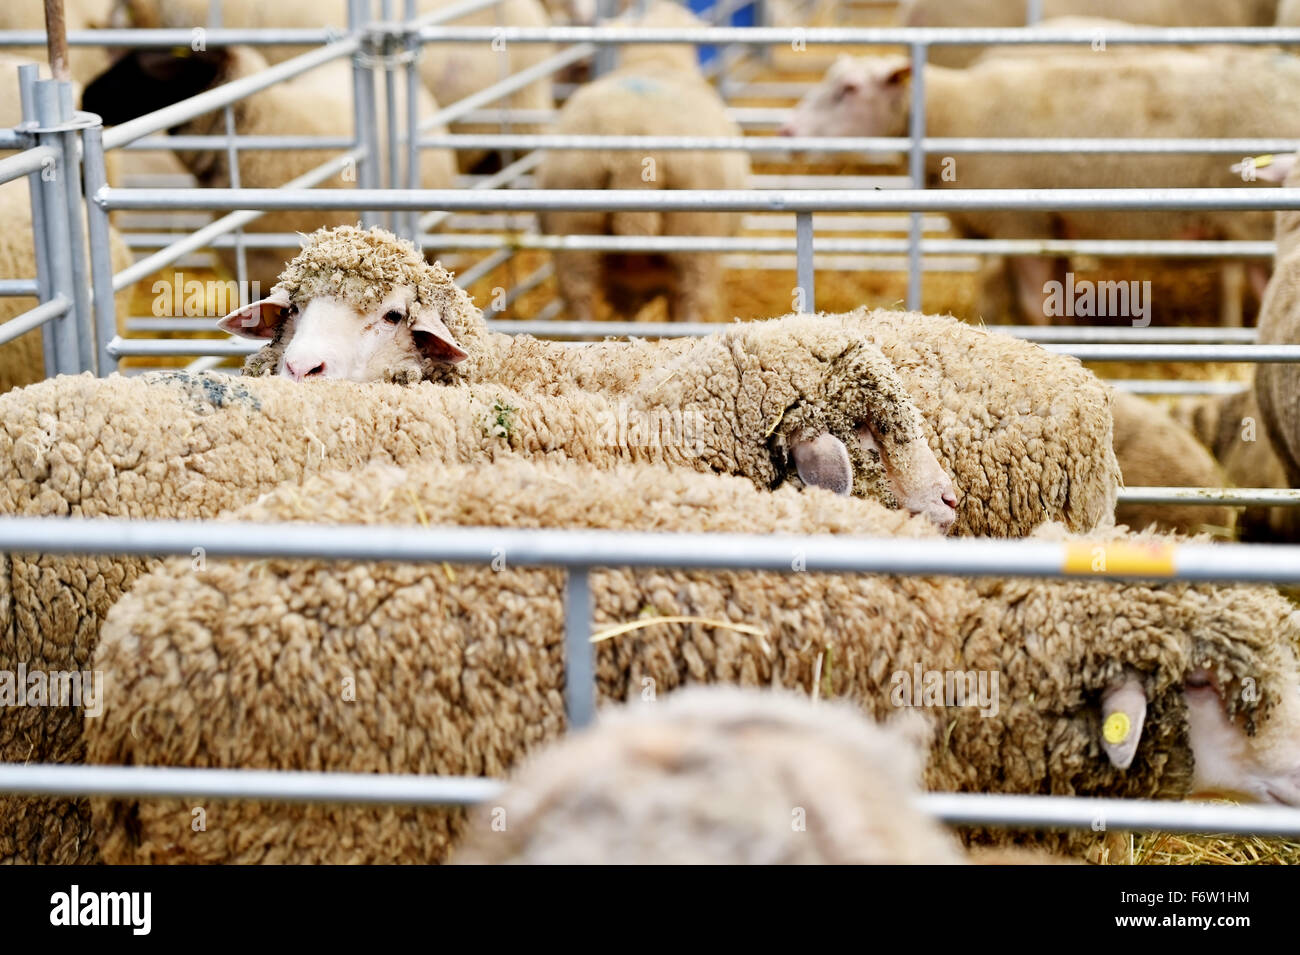 Docenas de ovejas pastando dentro de un lápiz en una granja de ovejas, Foto de stock